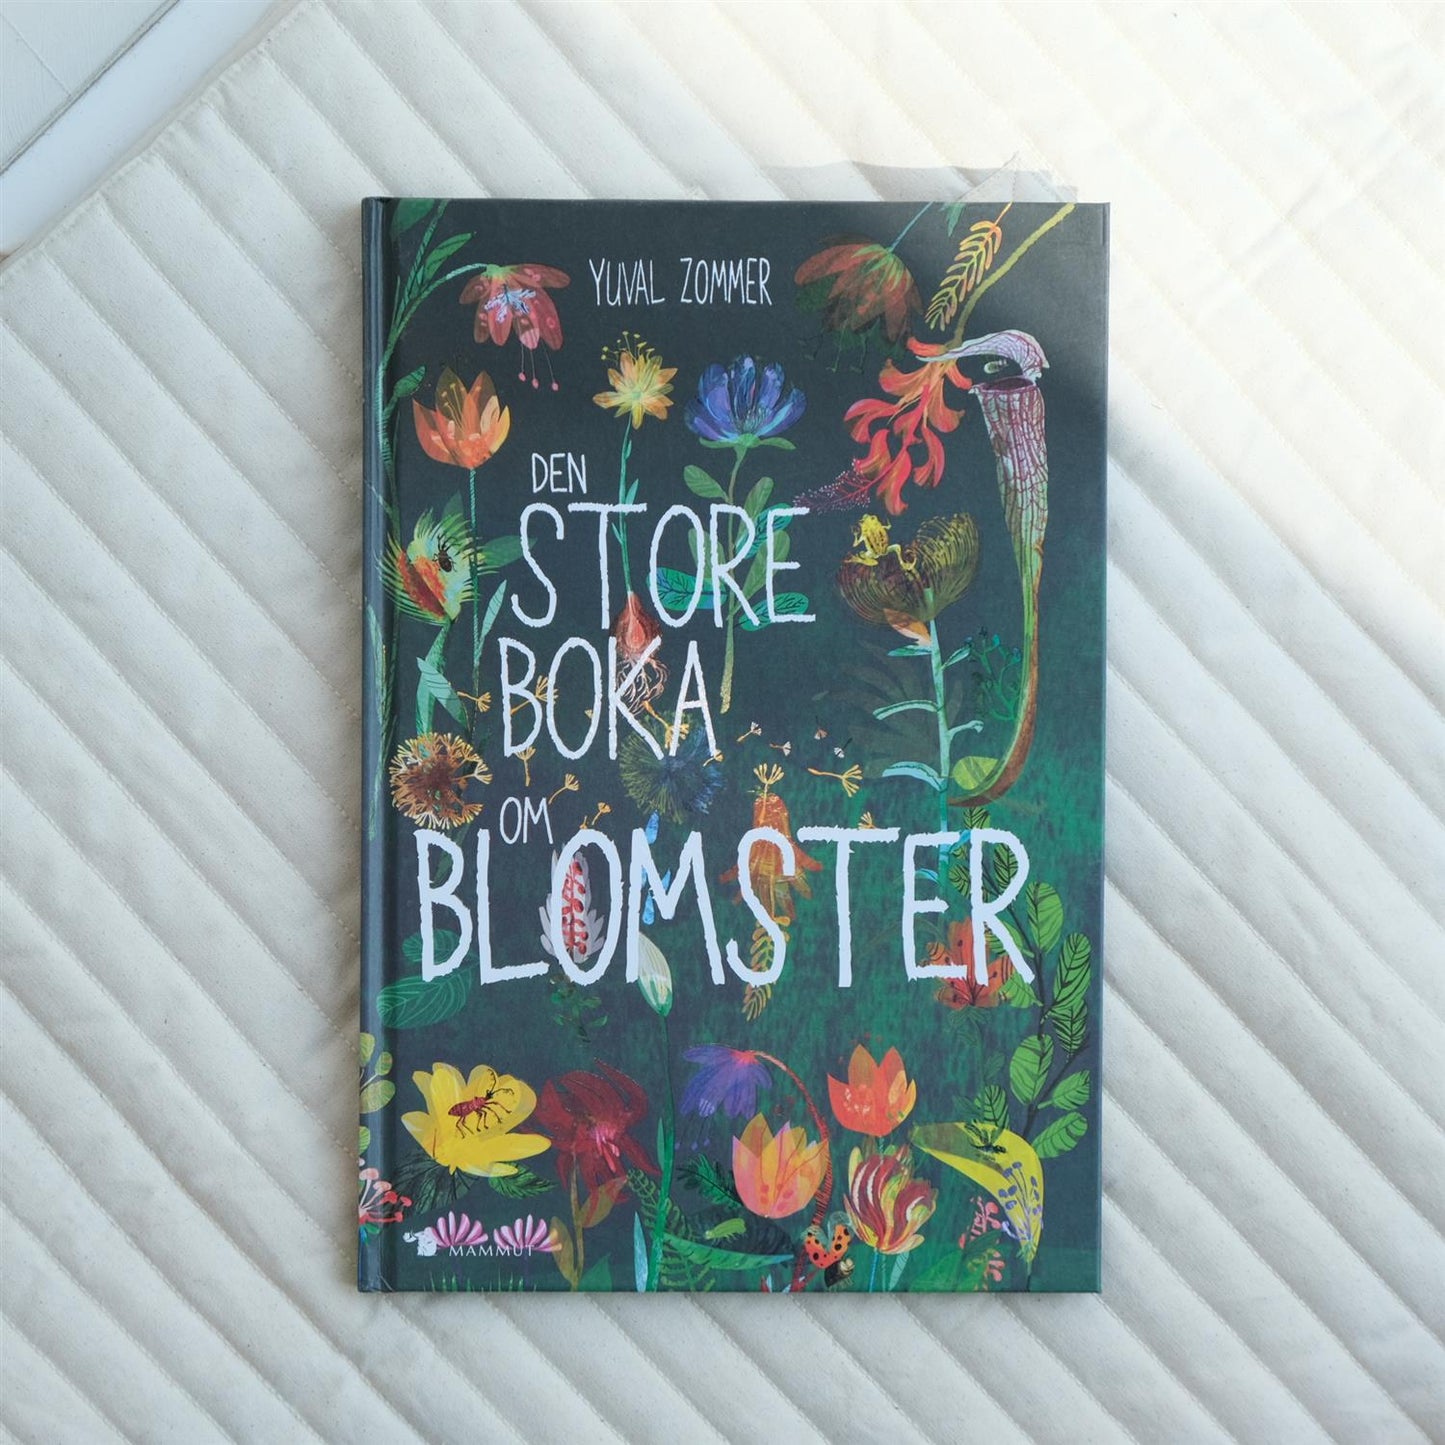 Den store boka om blomster - Yuval Zommer